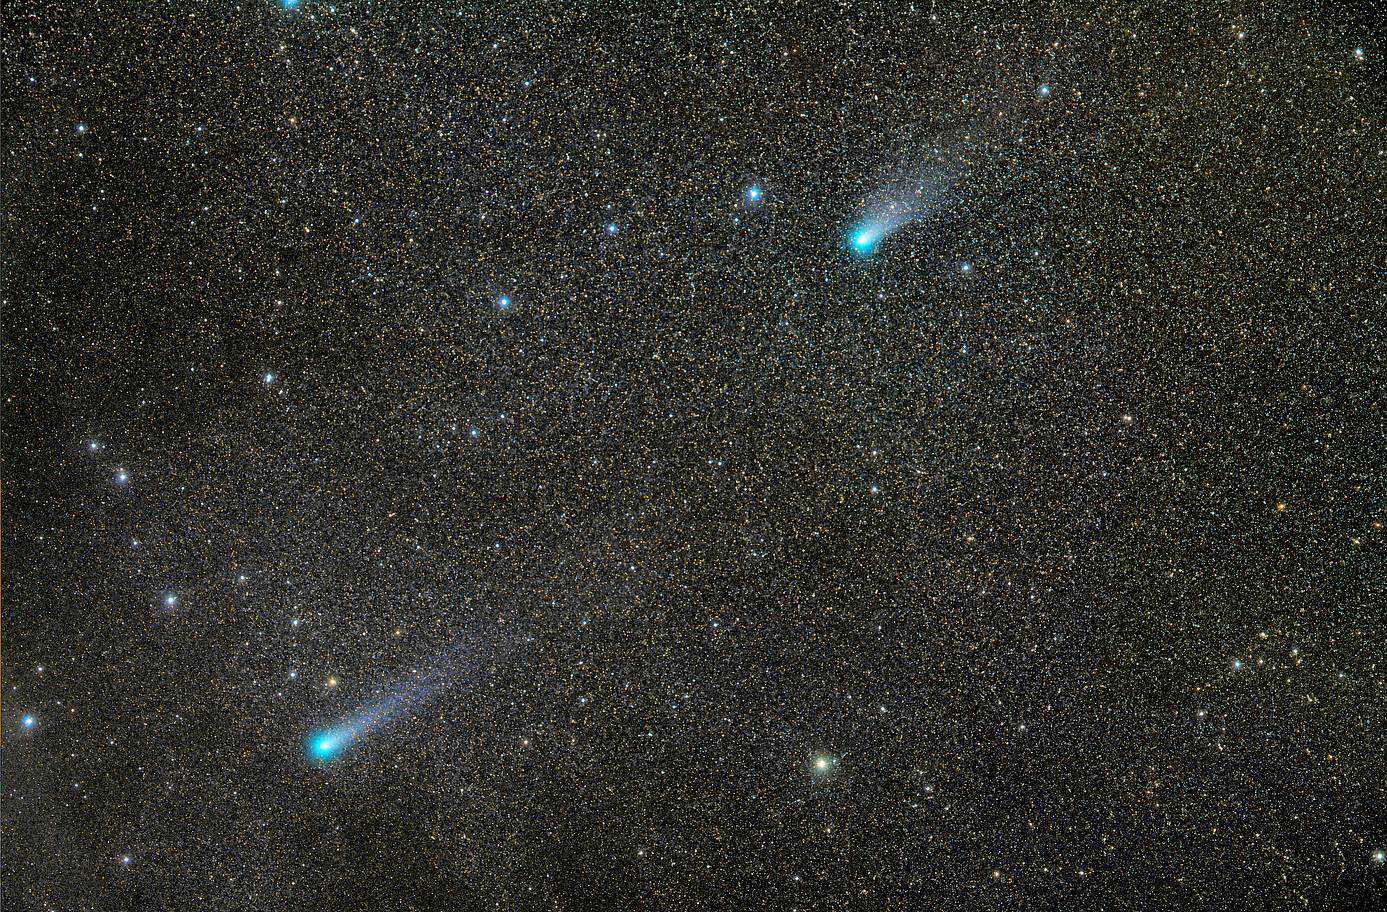 Kometenpaar Lovejoy und Linear